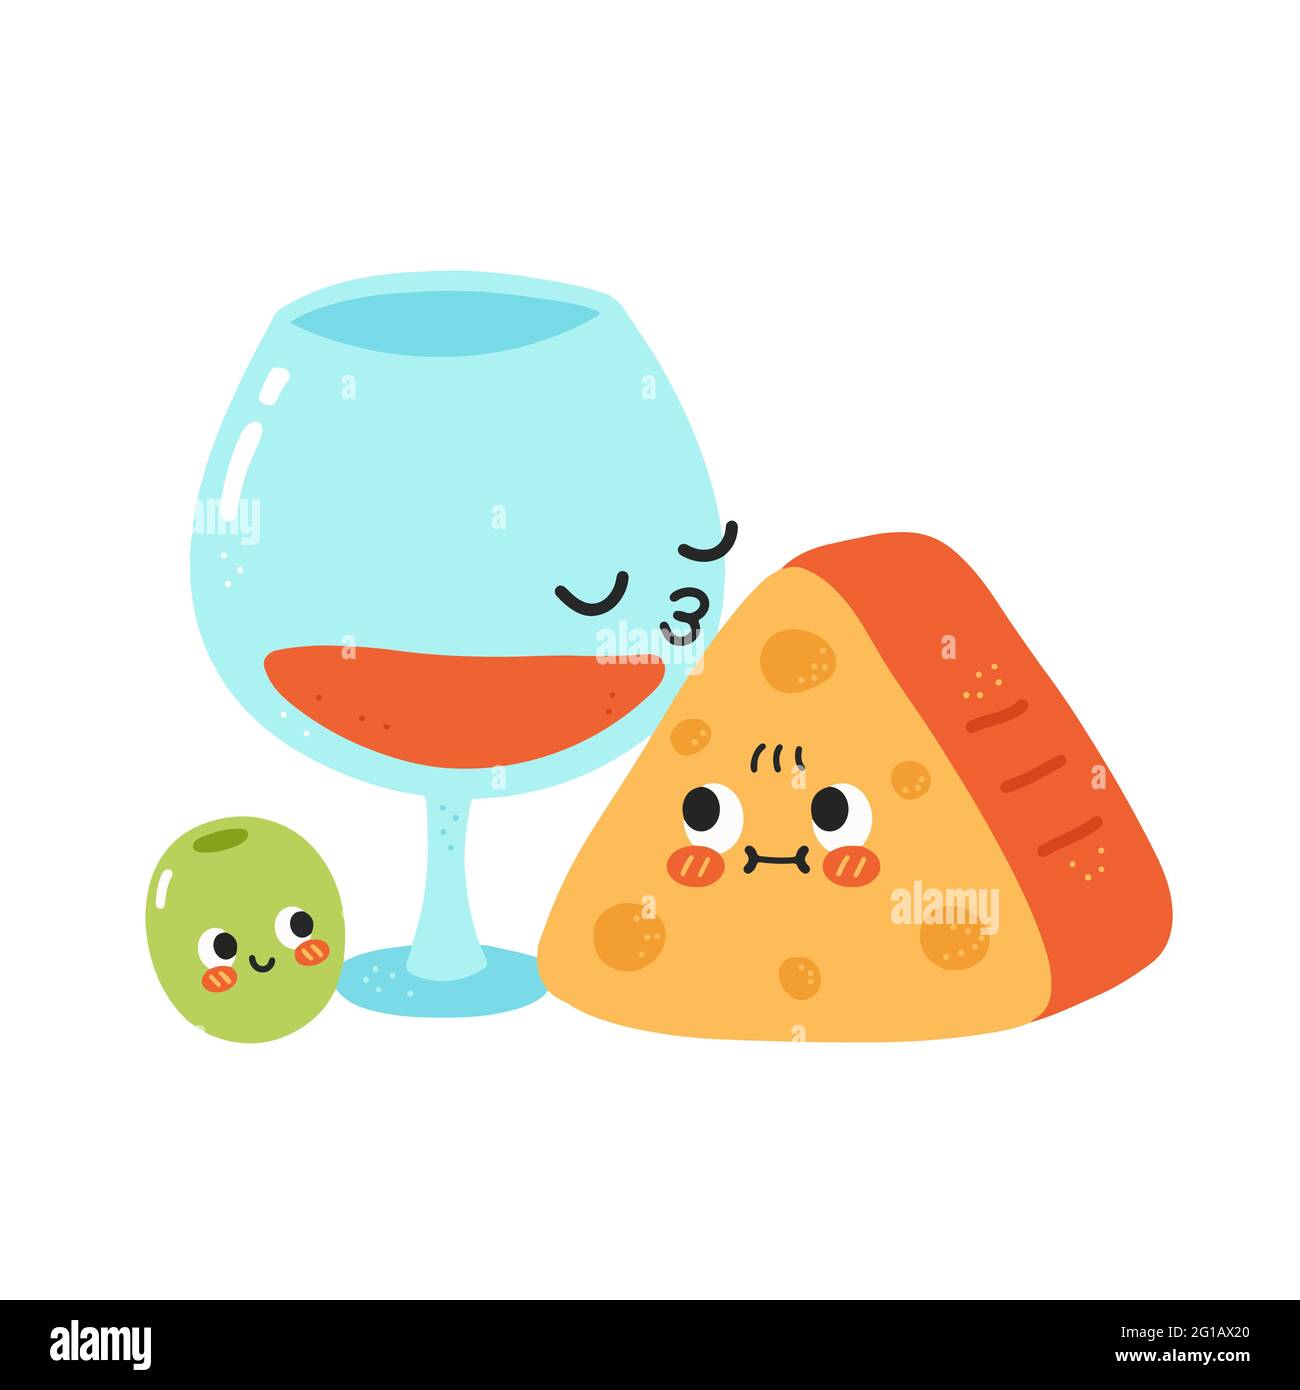 Carino divertente bicchiere di vino Kiss formaggio. Icona raffigurante il carattere kawaii del fumetto disegnato a mano del vettore. Isolato su sfondo bianco. Vino rosso, formaggio e cartone animato d'oliva concetto di carattere Illustrazione Vettoriale